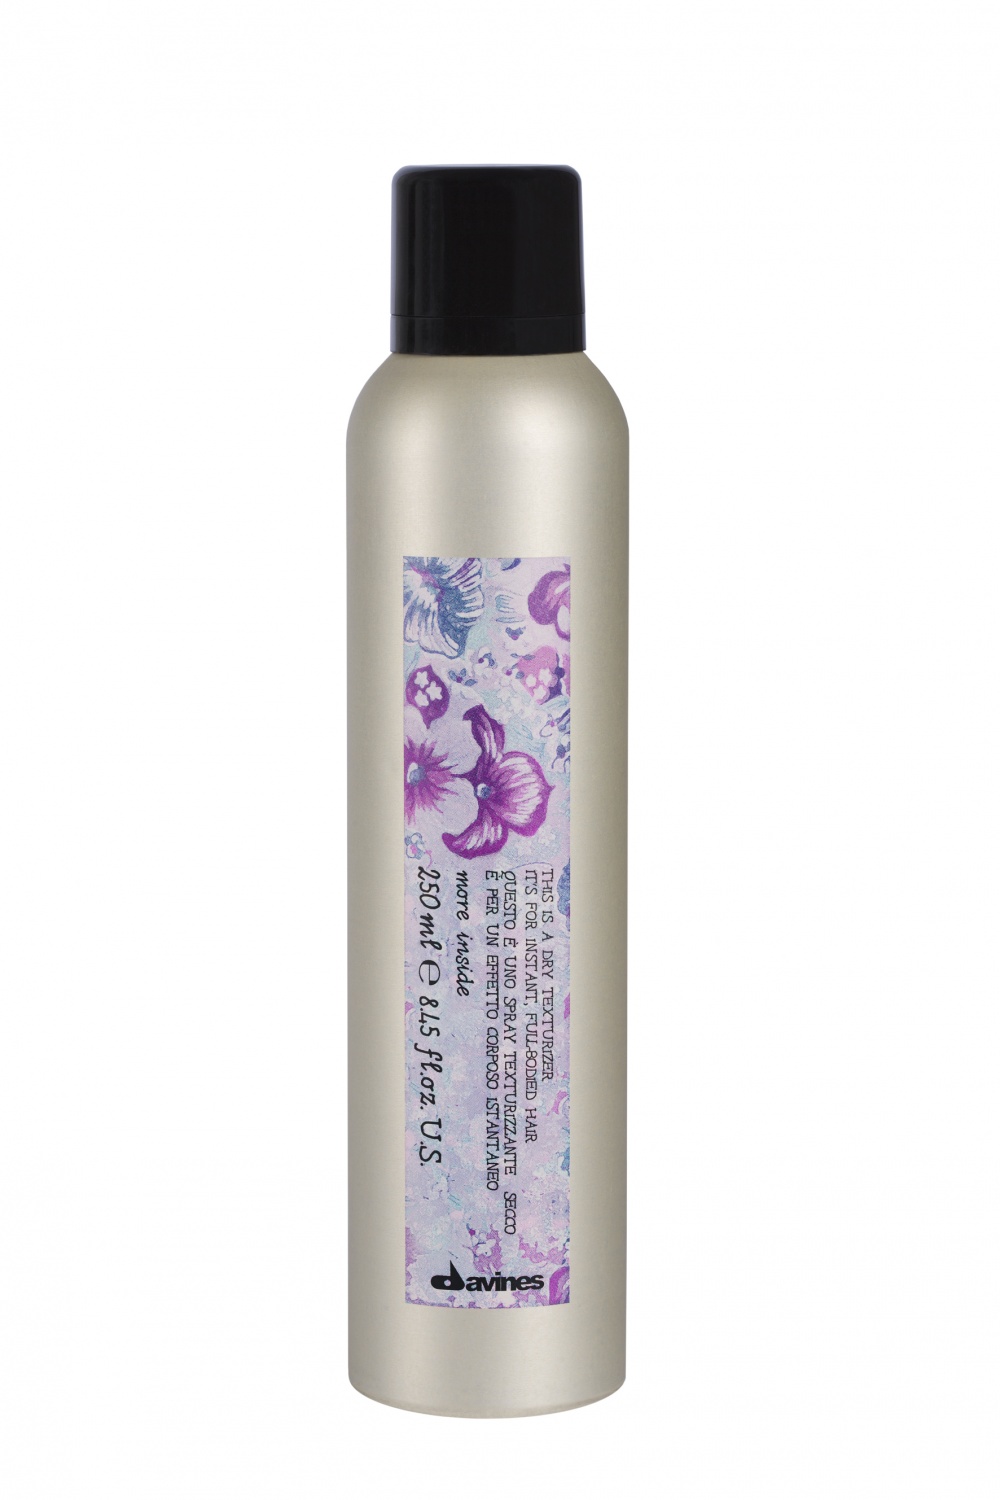 Davines More Inside Dry Texturizer Hair Spray 250 ml. - интернет-магазин профессиональной косметики Spadream, изображение 18346